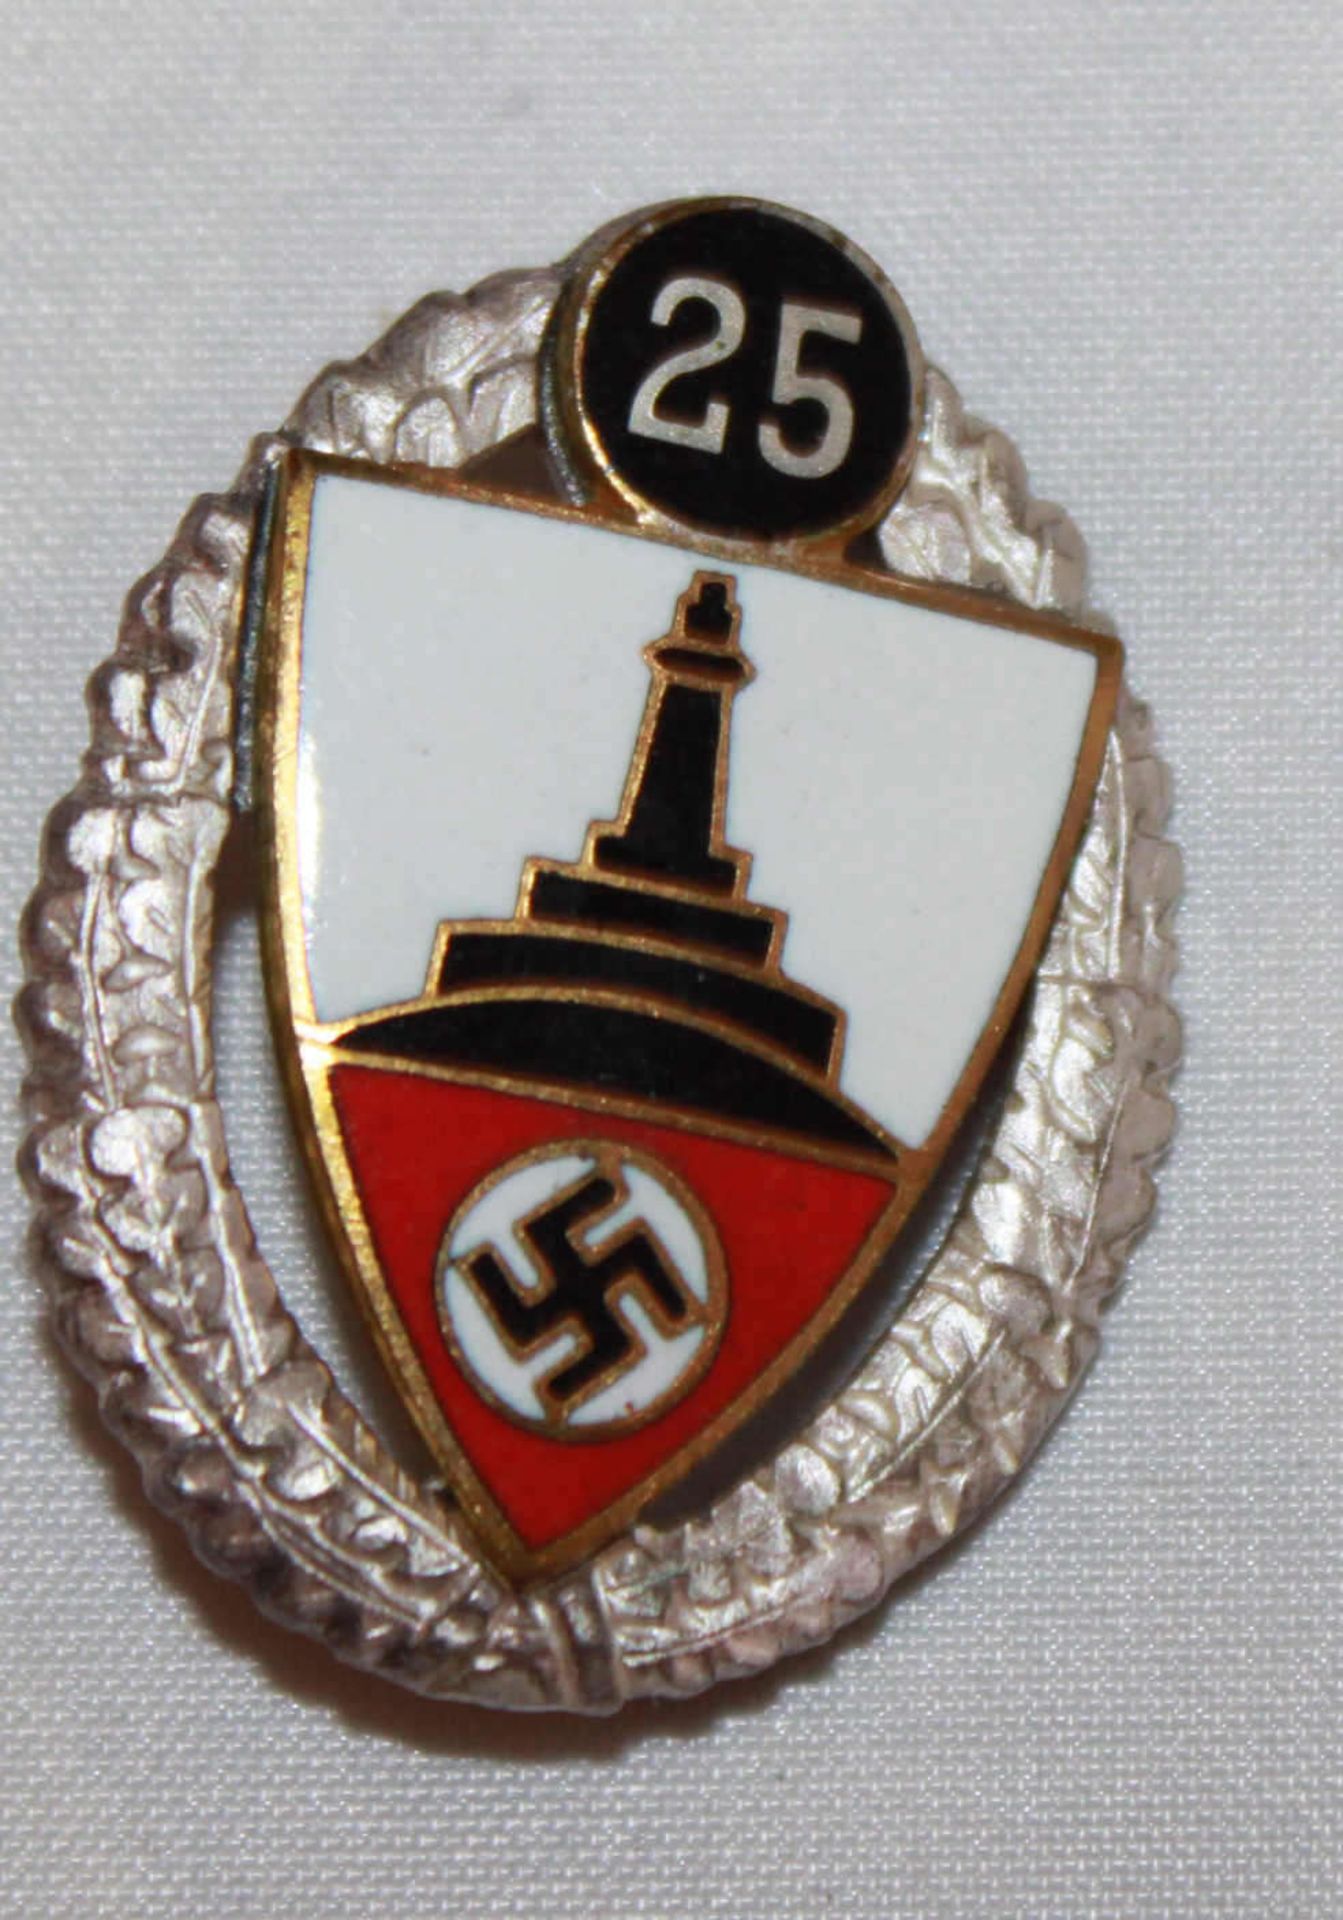 Silbernes NS Ehrenzeichen, "25 Jahre Deutscher Kriegerbund Kyffhäuser", guter Zustand. Silver NS